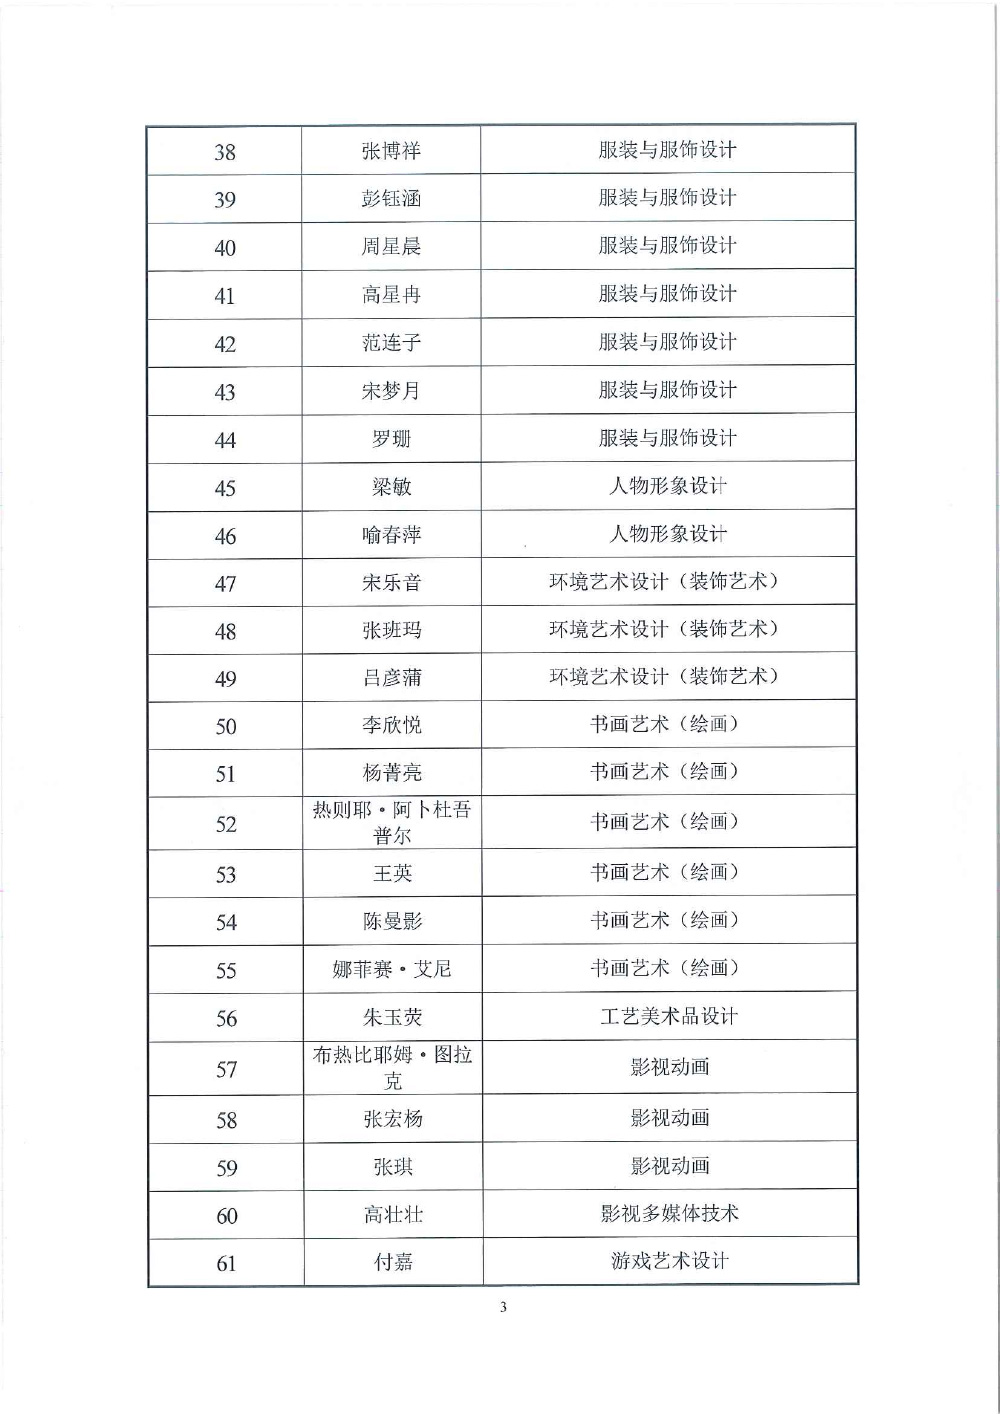 天下足球网天津市求职创业补贴工作的公示(1)-3.jpg